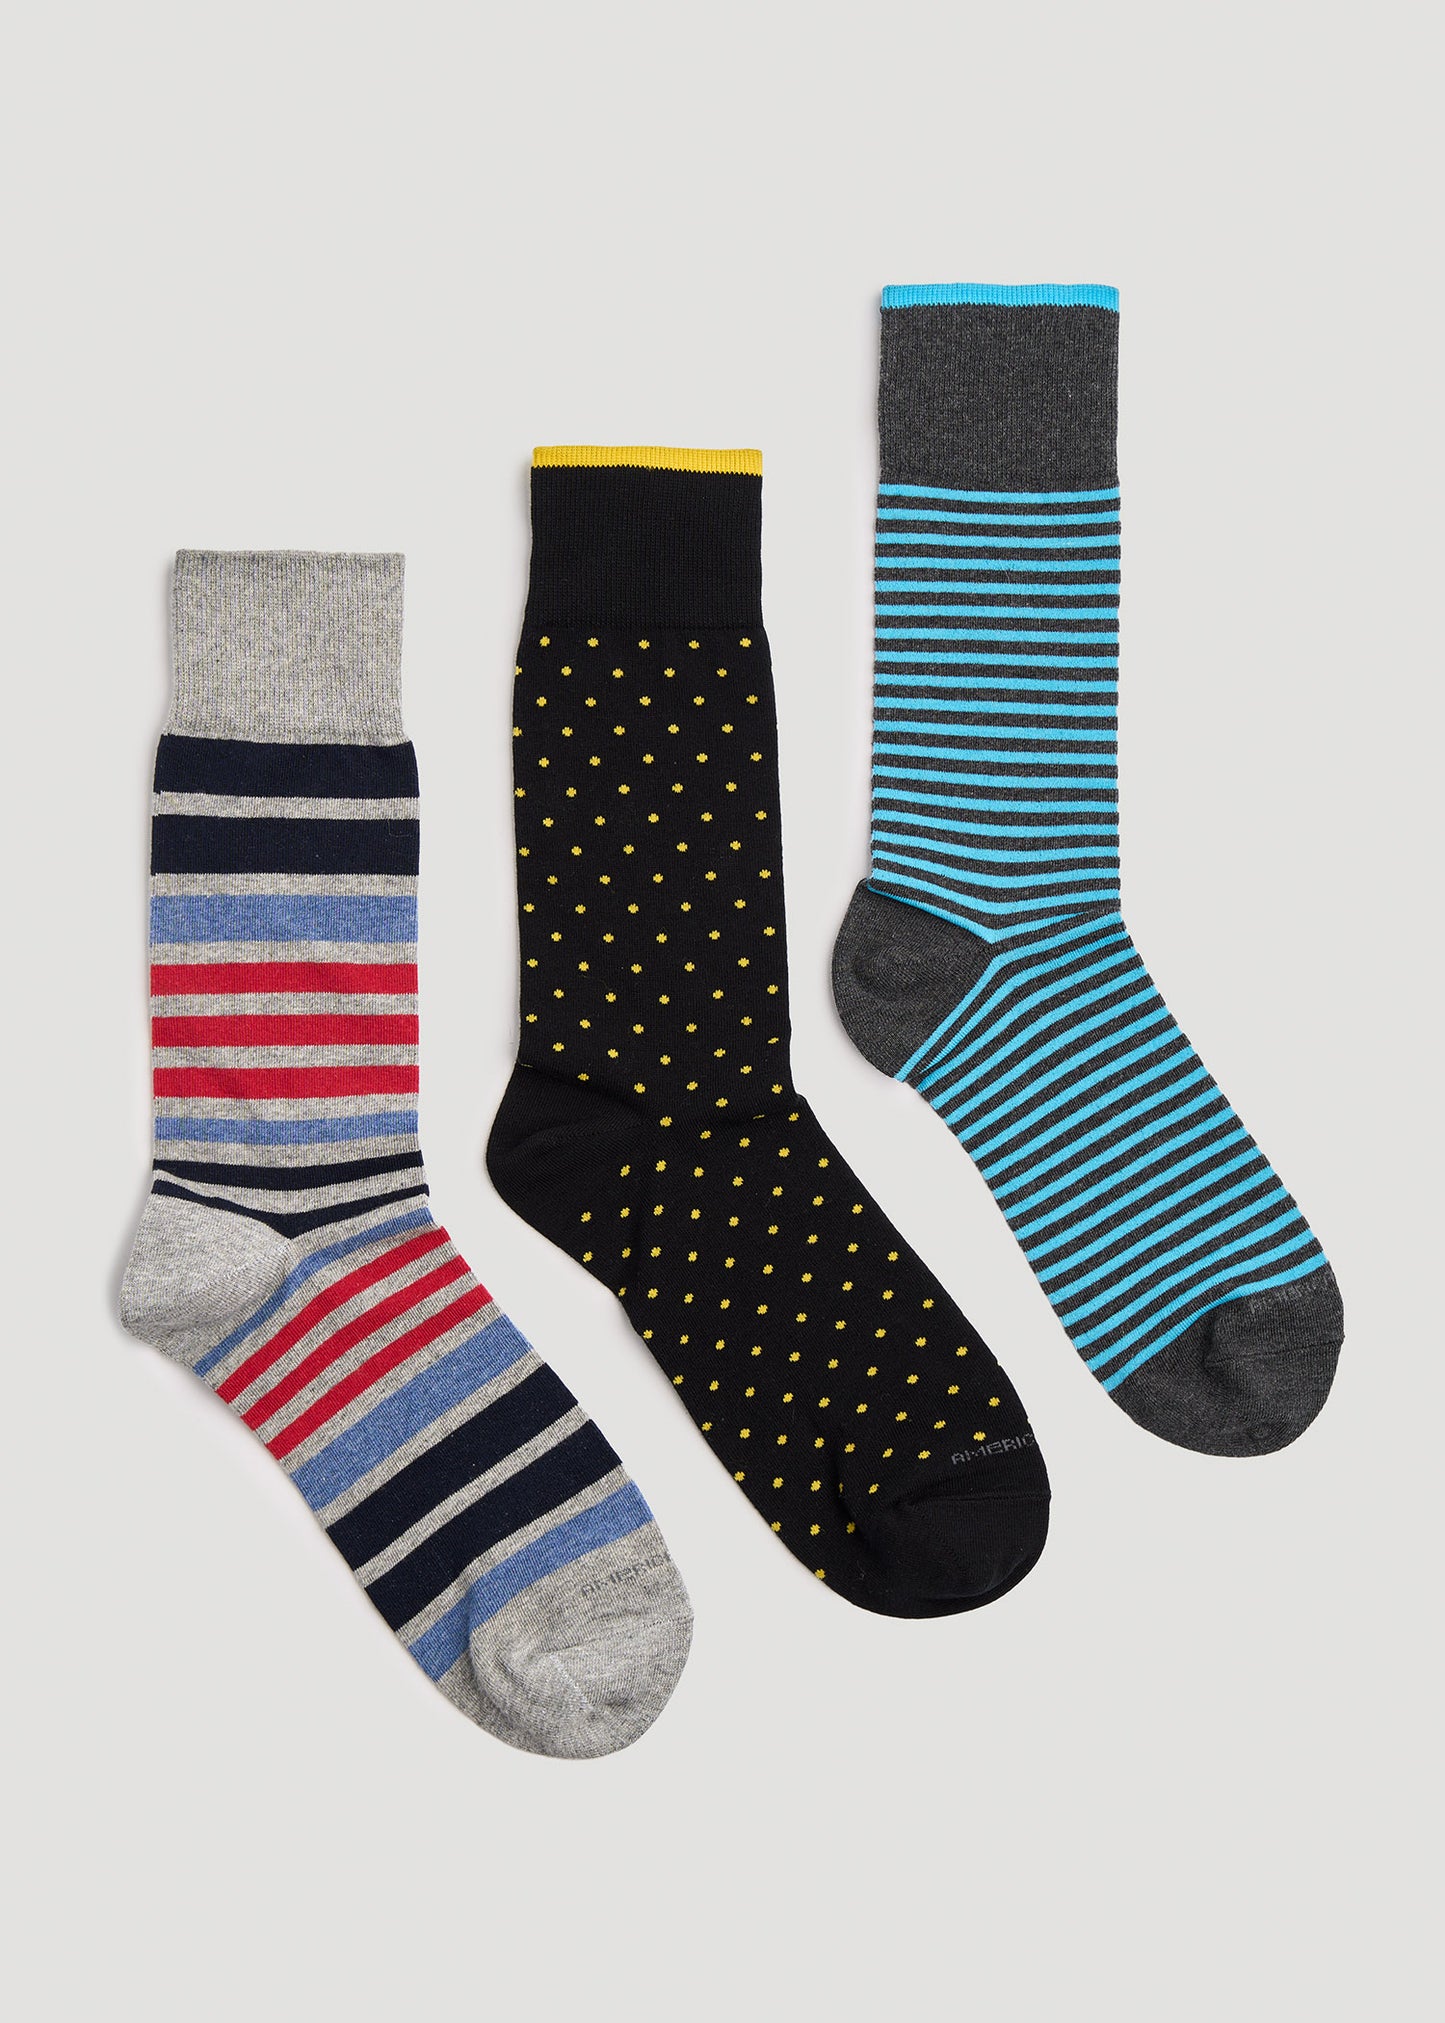 men’s dress socks